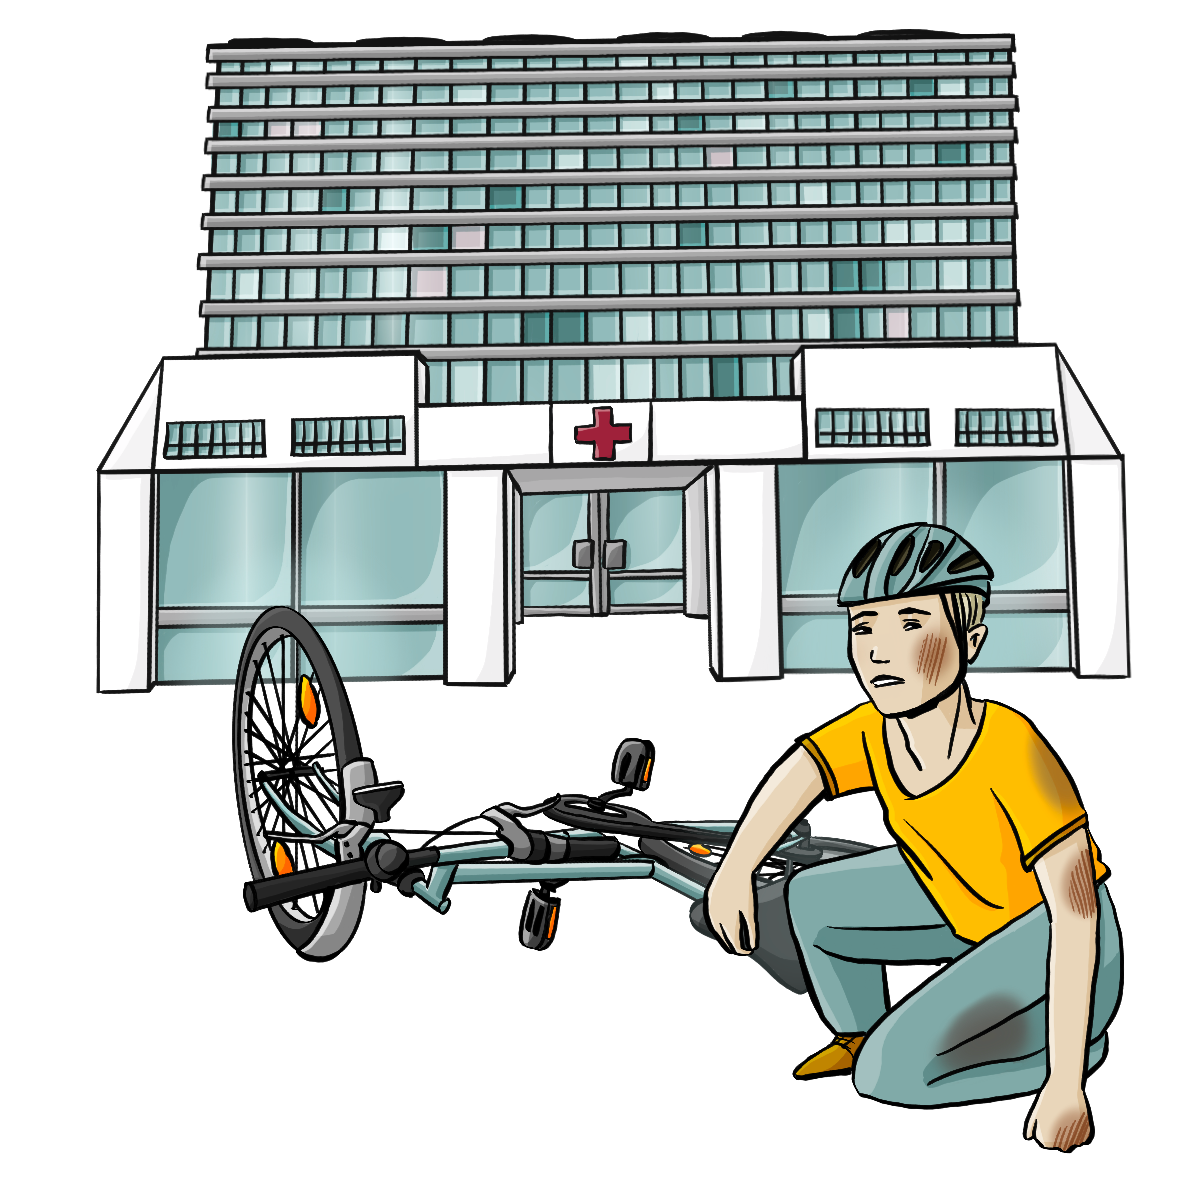 Ein Fahrrad liegt auf dem Boden. Daneben kniet ein Mann mit Fahrradhelm. Er hat Flecken an der Hose und Schrammen an Hand, Ellbogen und Wange. Im Hintergrund ist ein Krankenhaus.